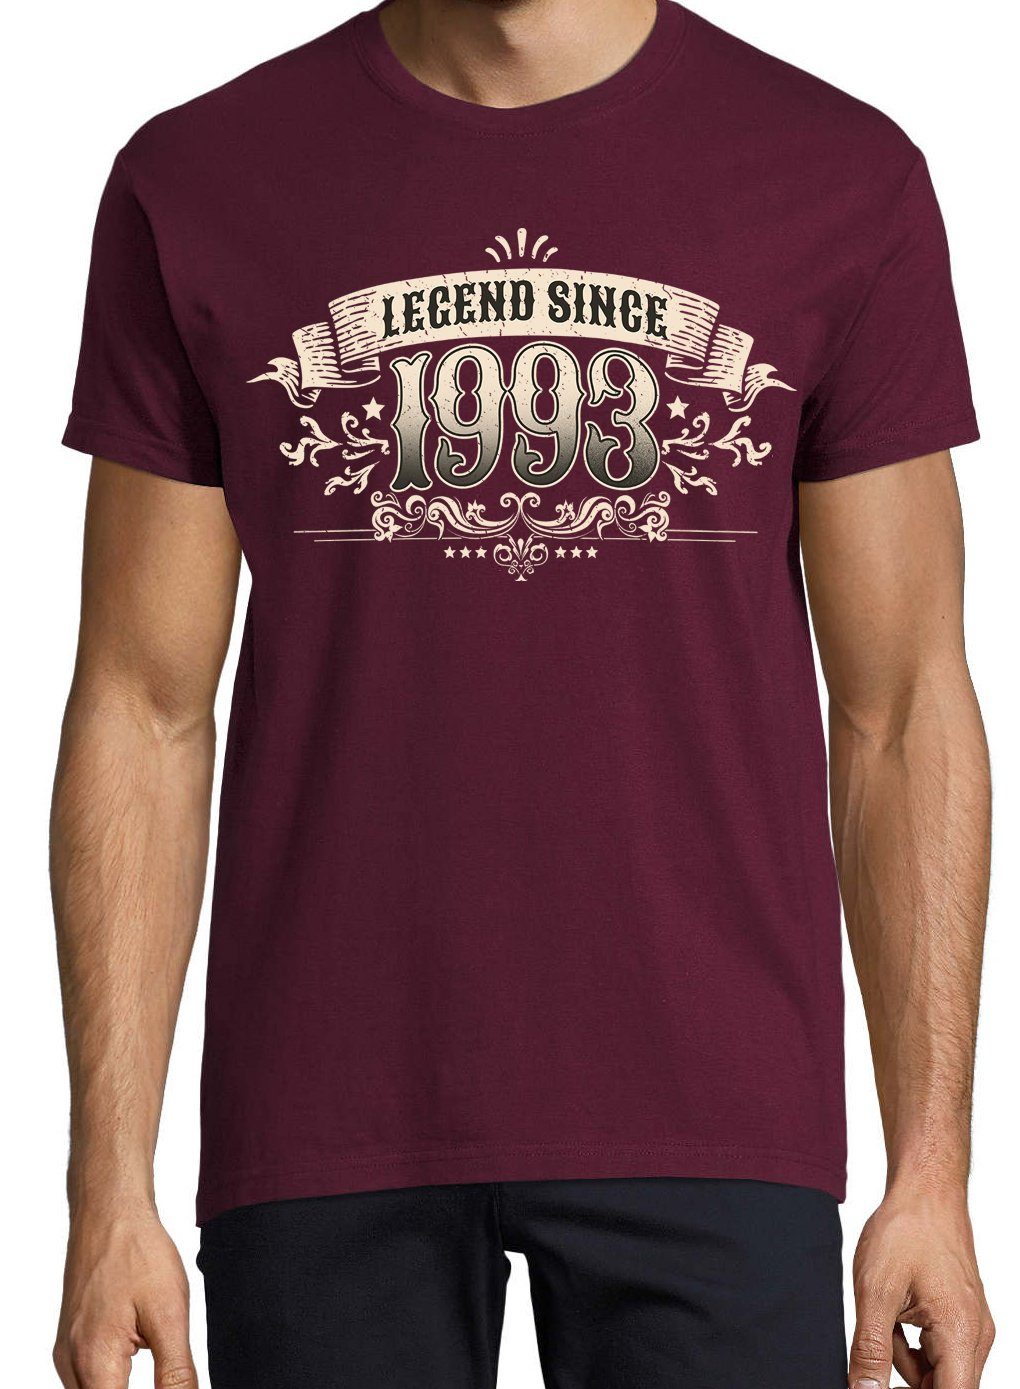 Youth Designz mit T-Shirt 1993" Since trendigem Herren Frontprint Burgund Shirt "Legend